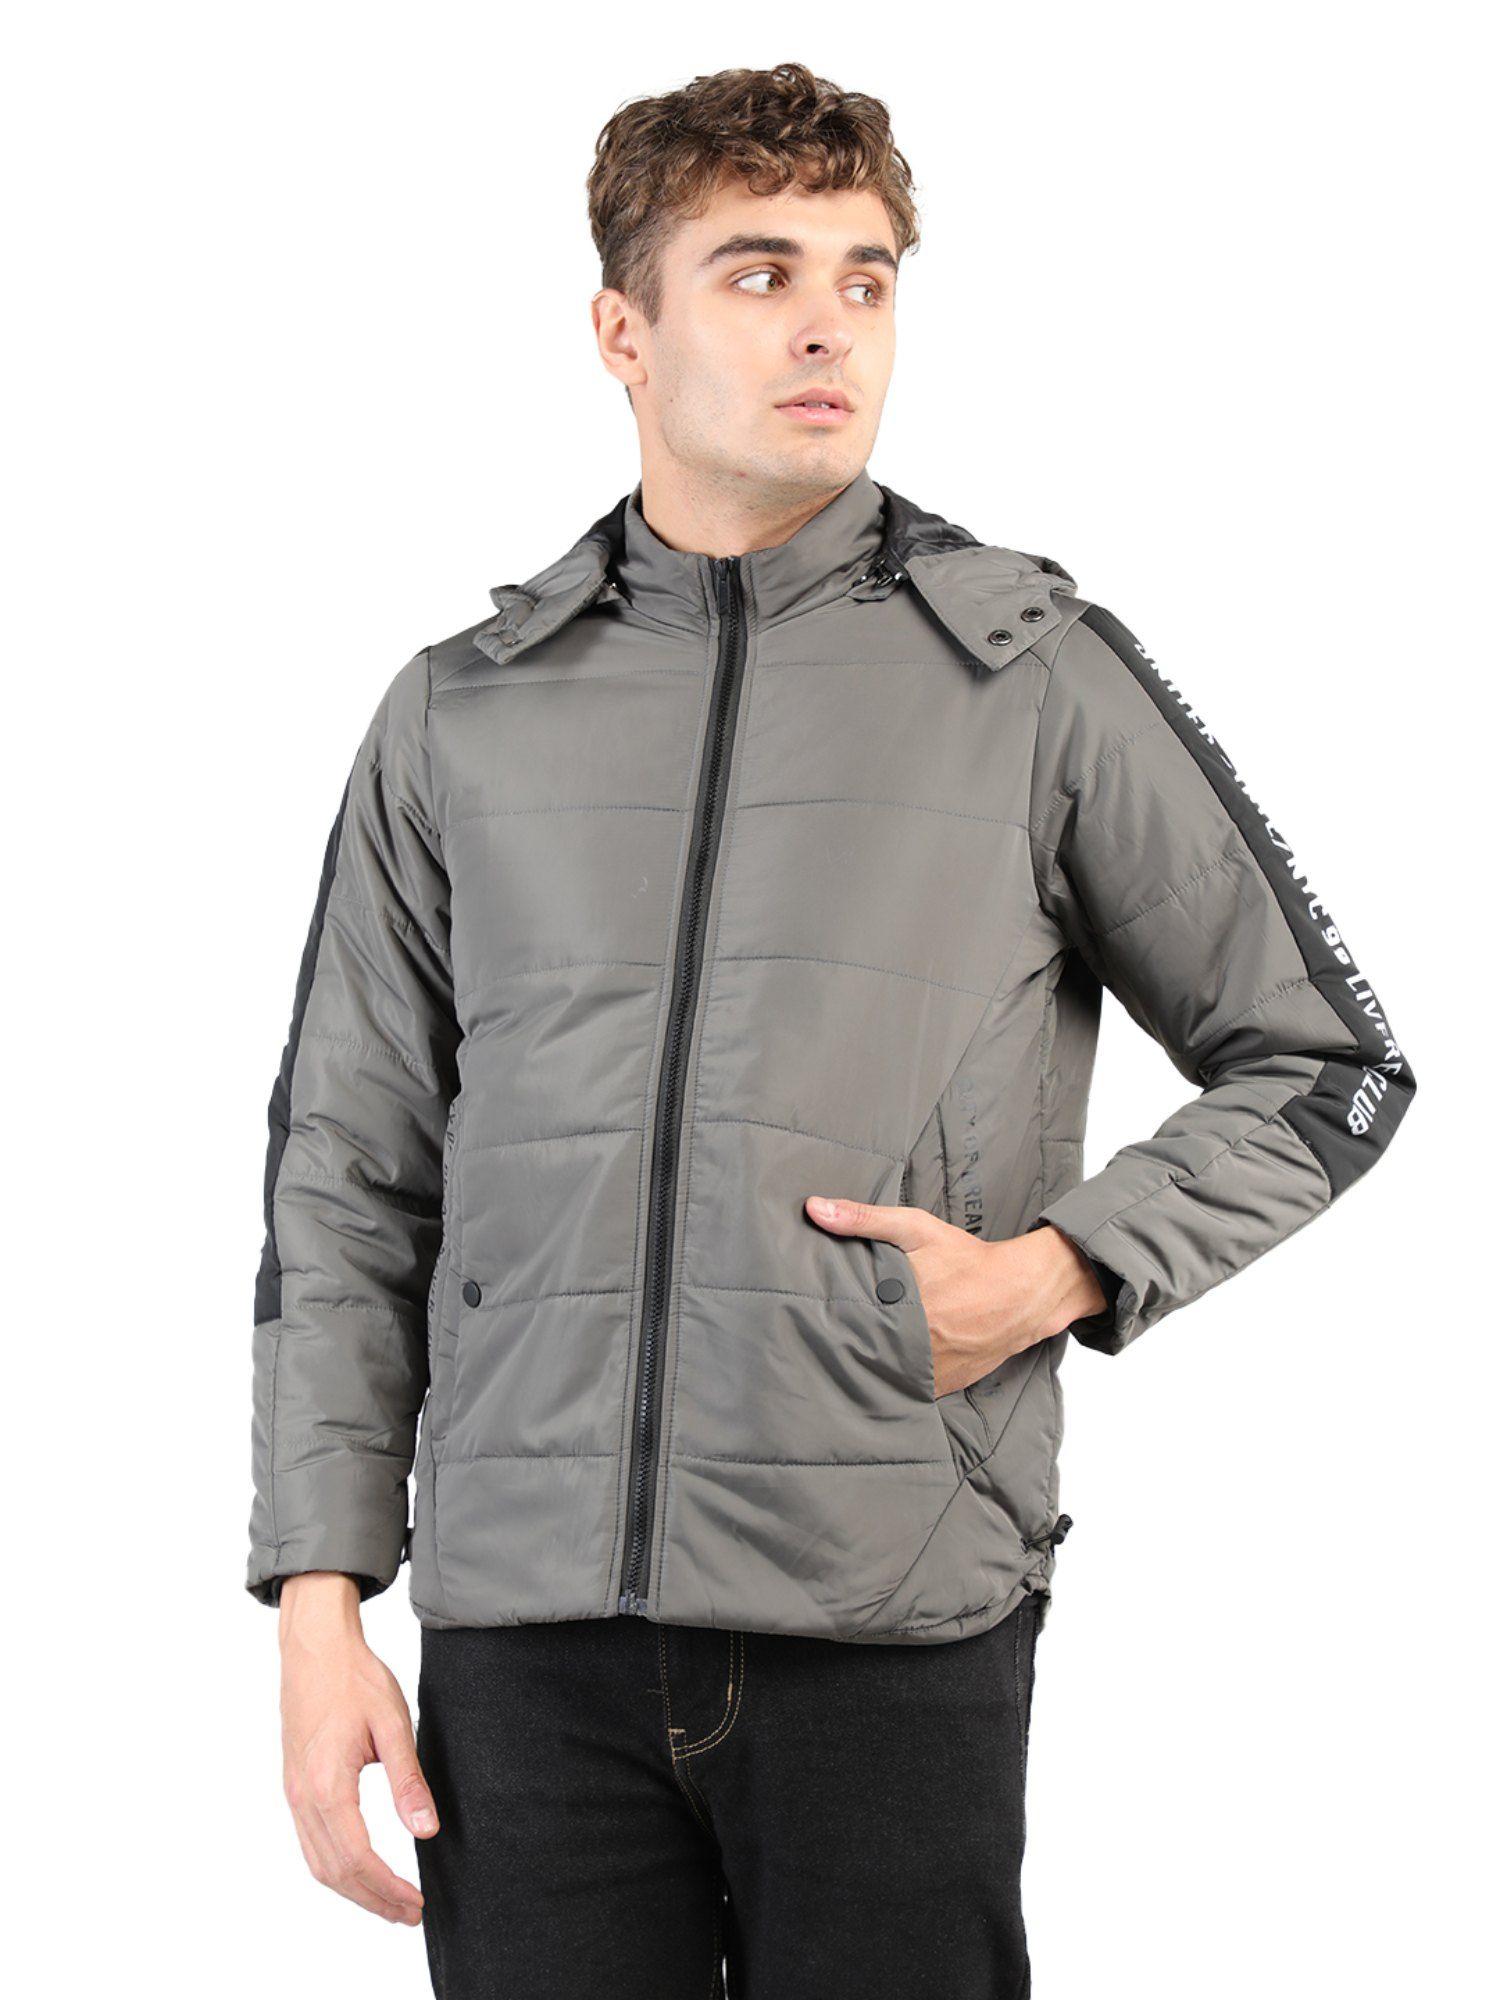 gents full sleeve hoody solid regular fit jacket in grey